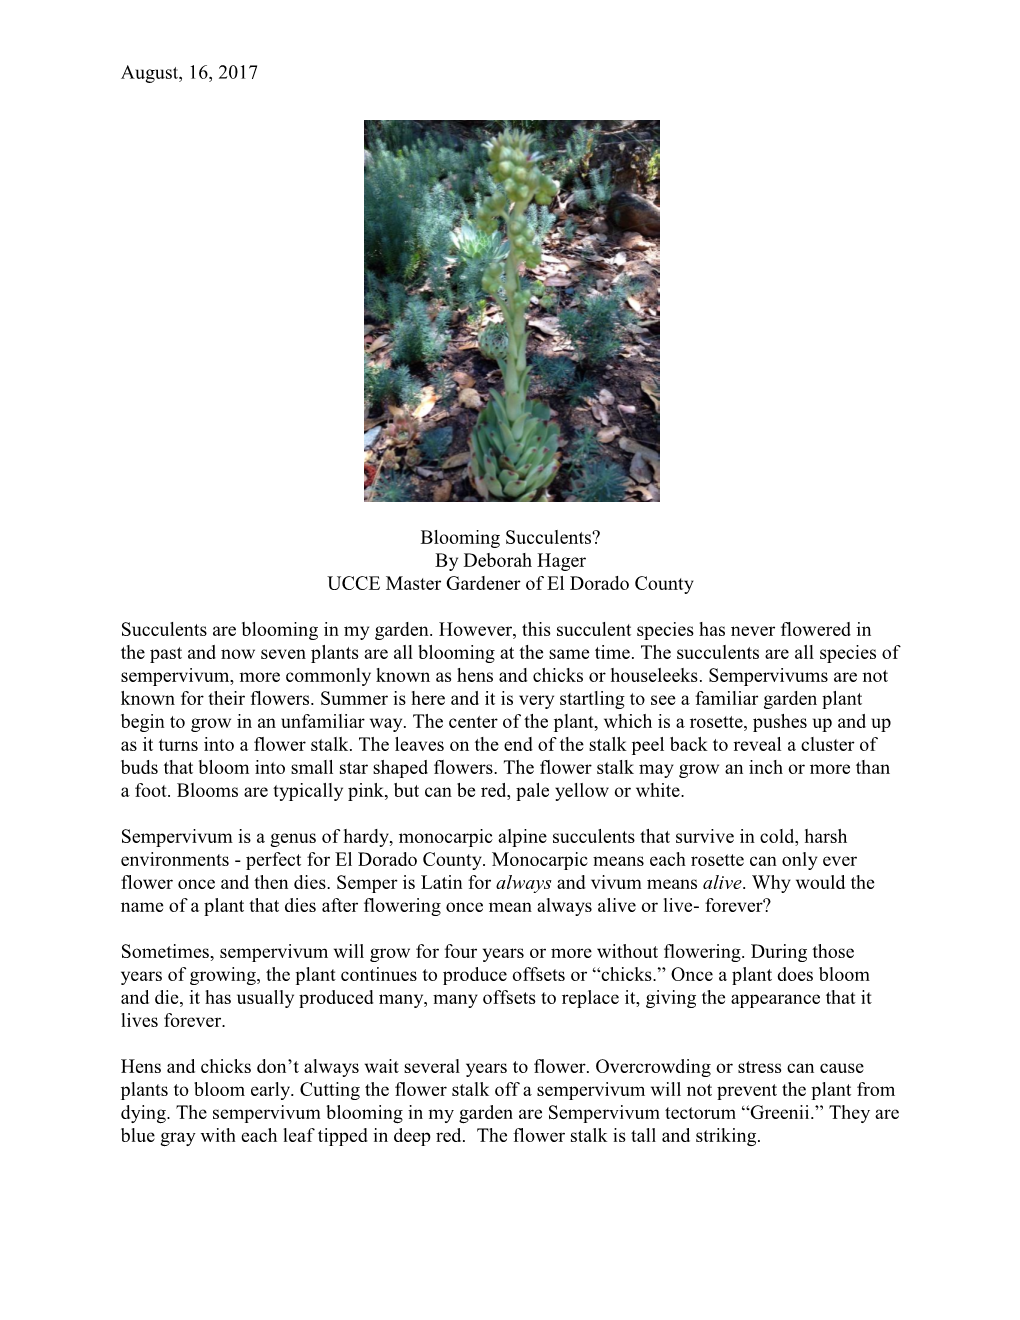 Blooming Succulents? by Deborah Hager UCCE Master Gardener of El Dorado County